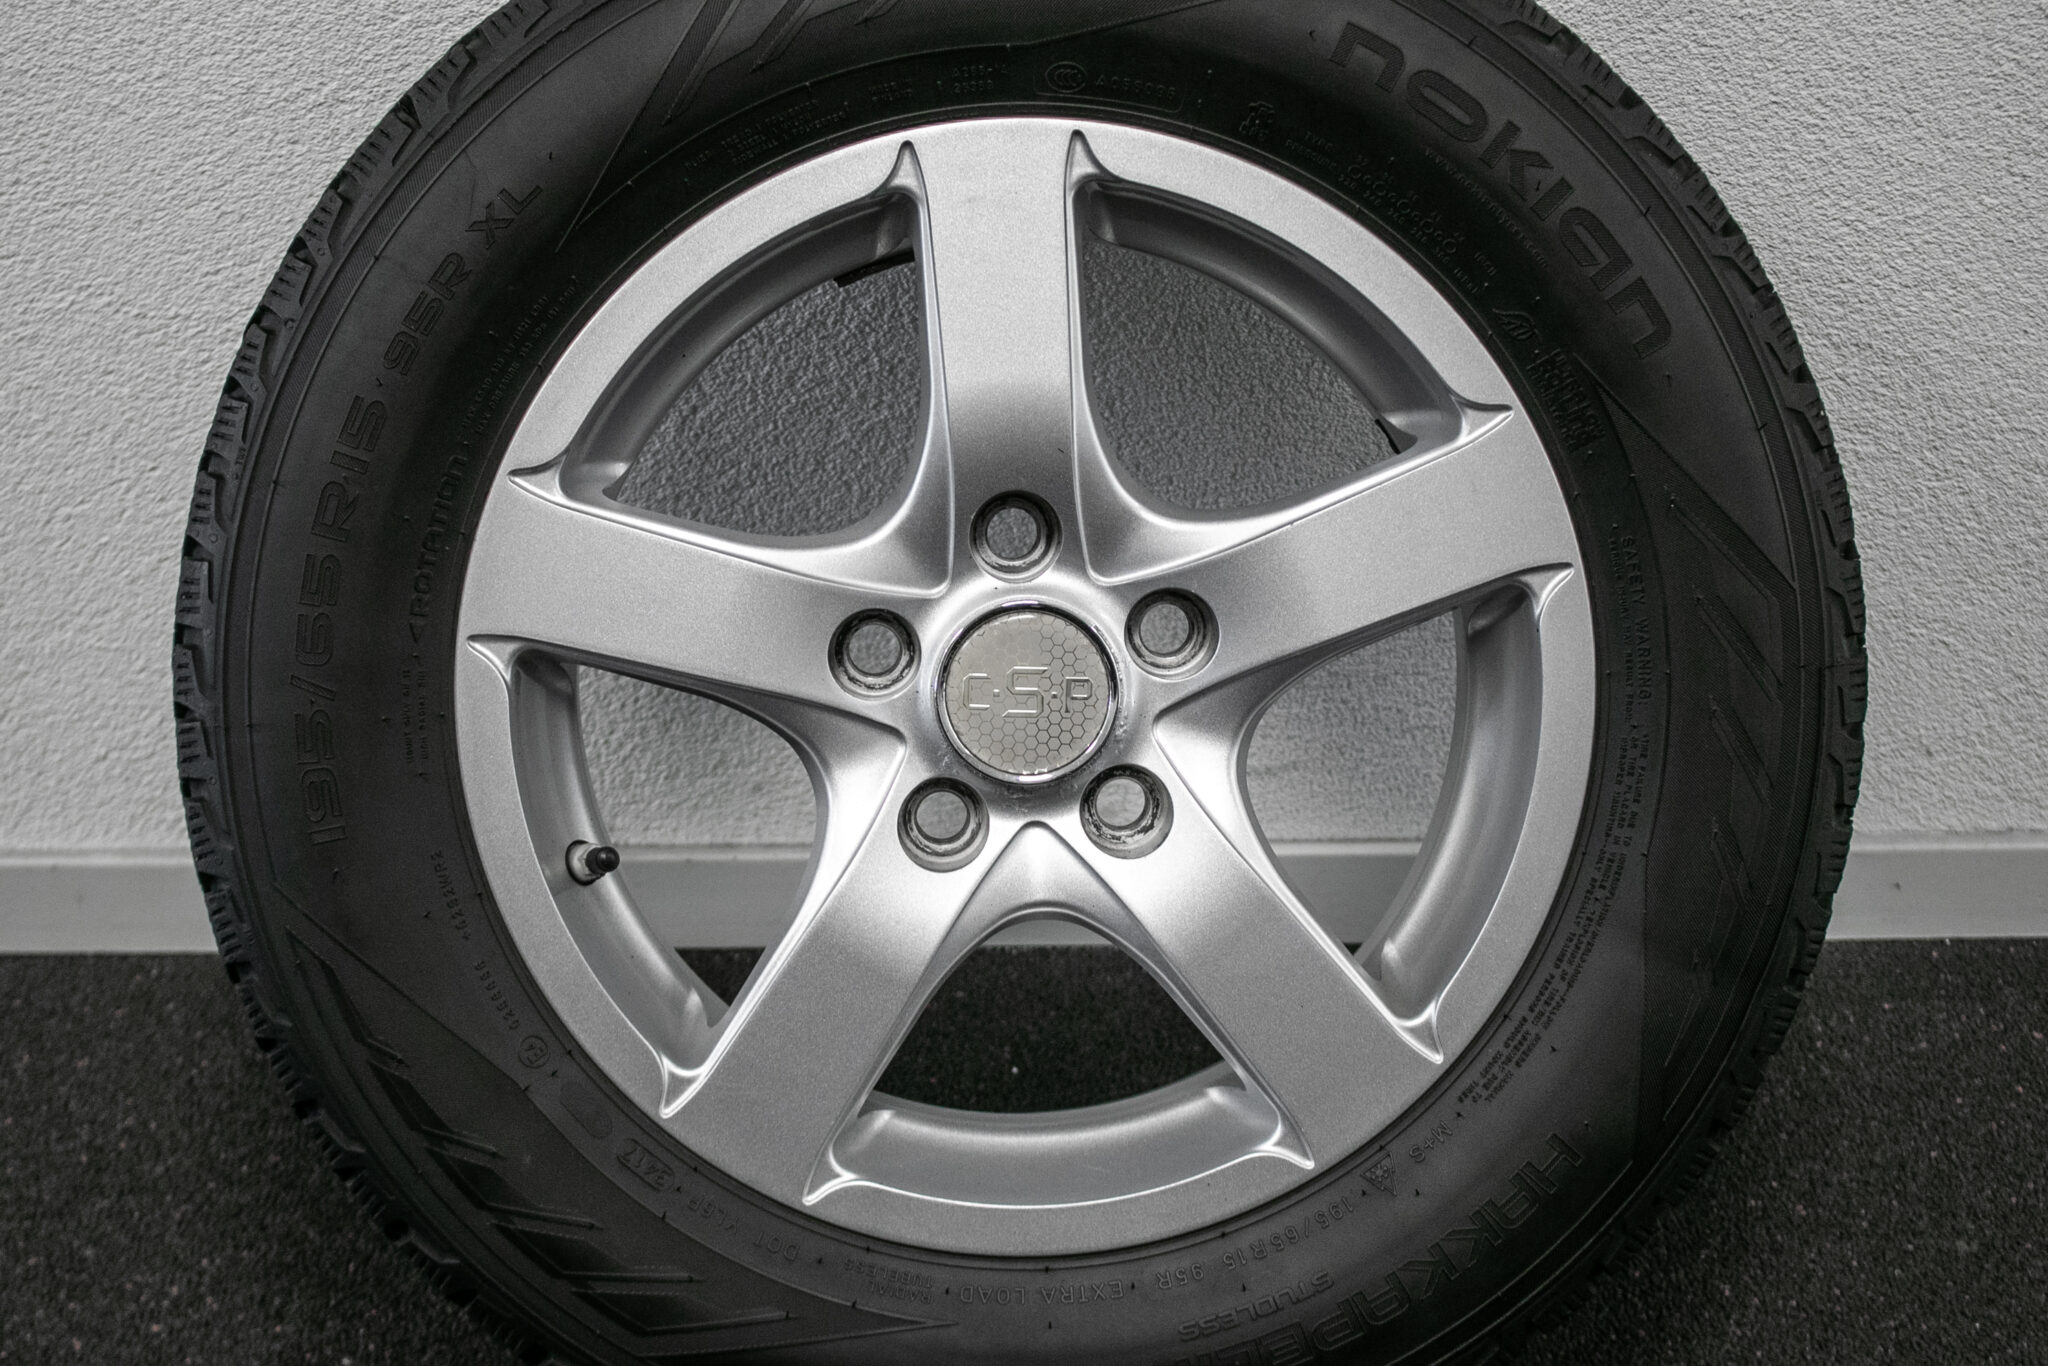 15" Winterset voor een Toyota Auris
€299,-
gebruikt, Profieldieptes: 5.5mm - 6mm